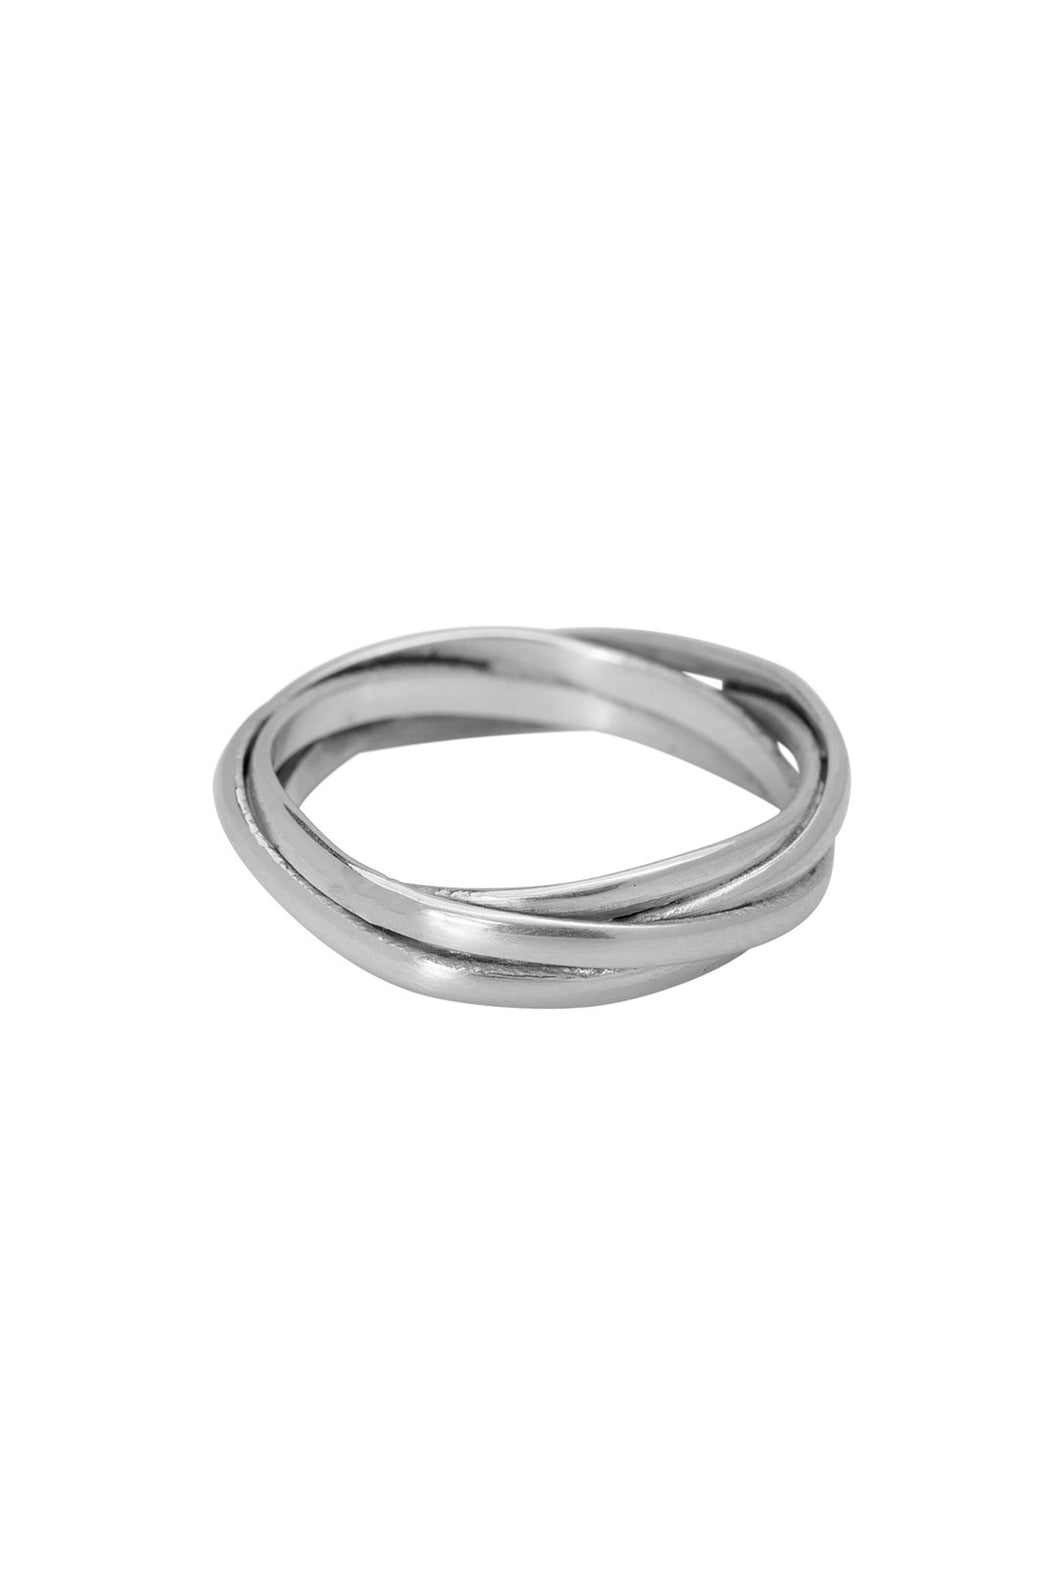 drie ringen together xzota ring | echt zilver –